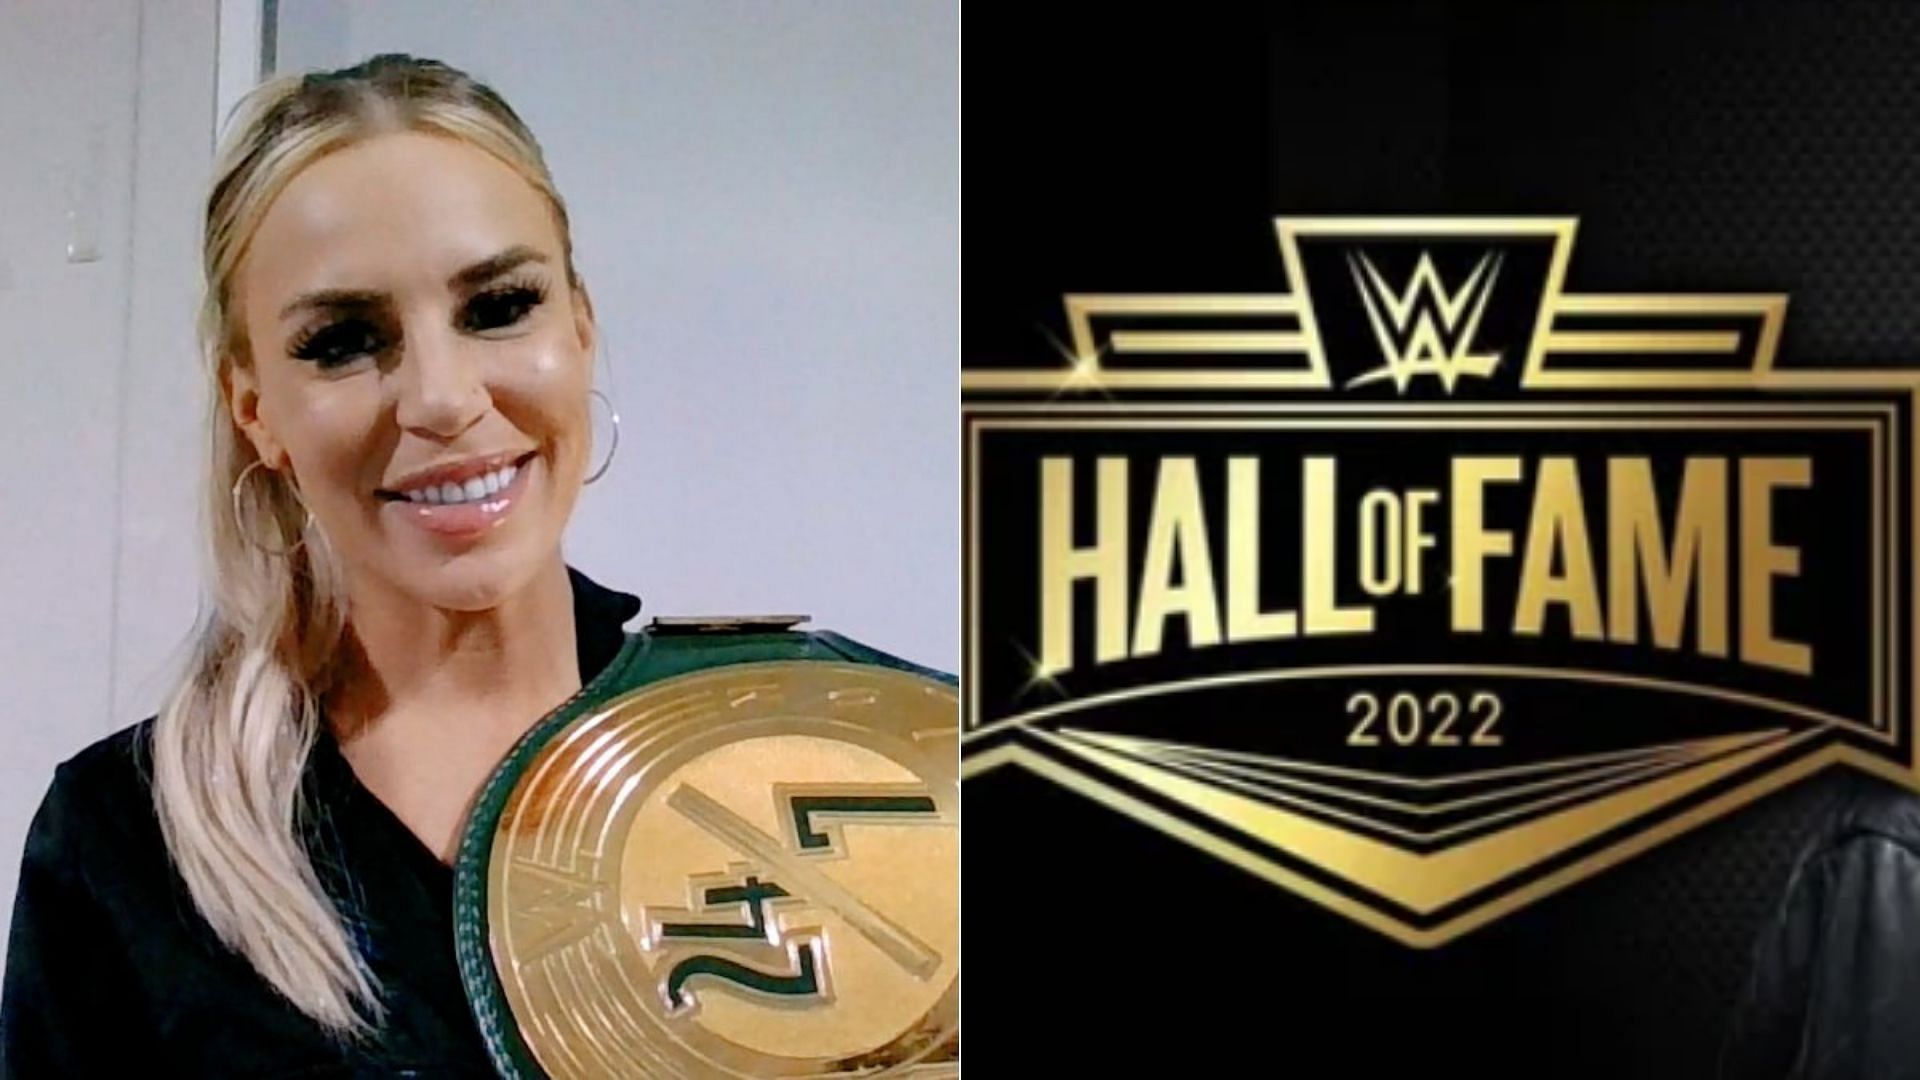 Dana Brooke has lavished praise on Natalya.